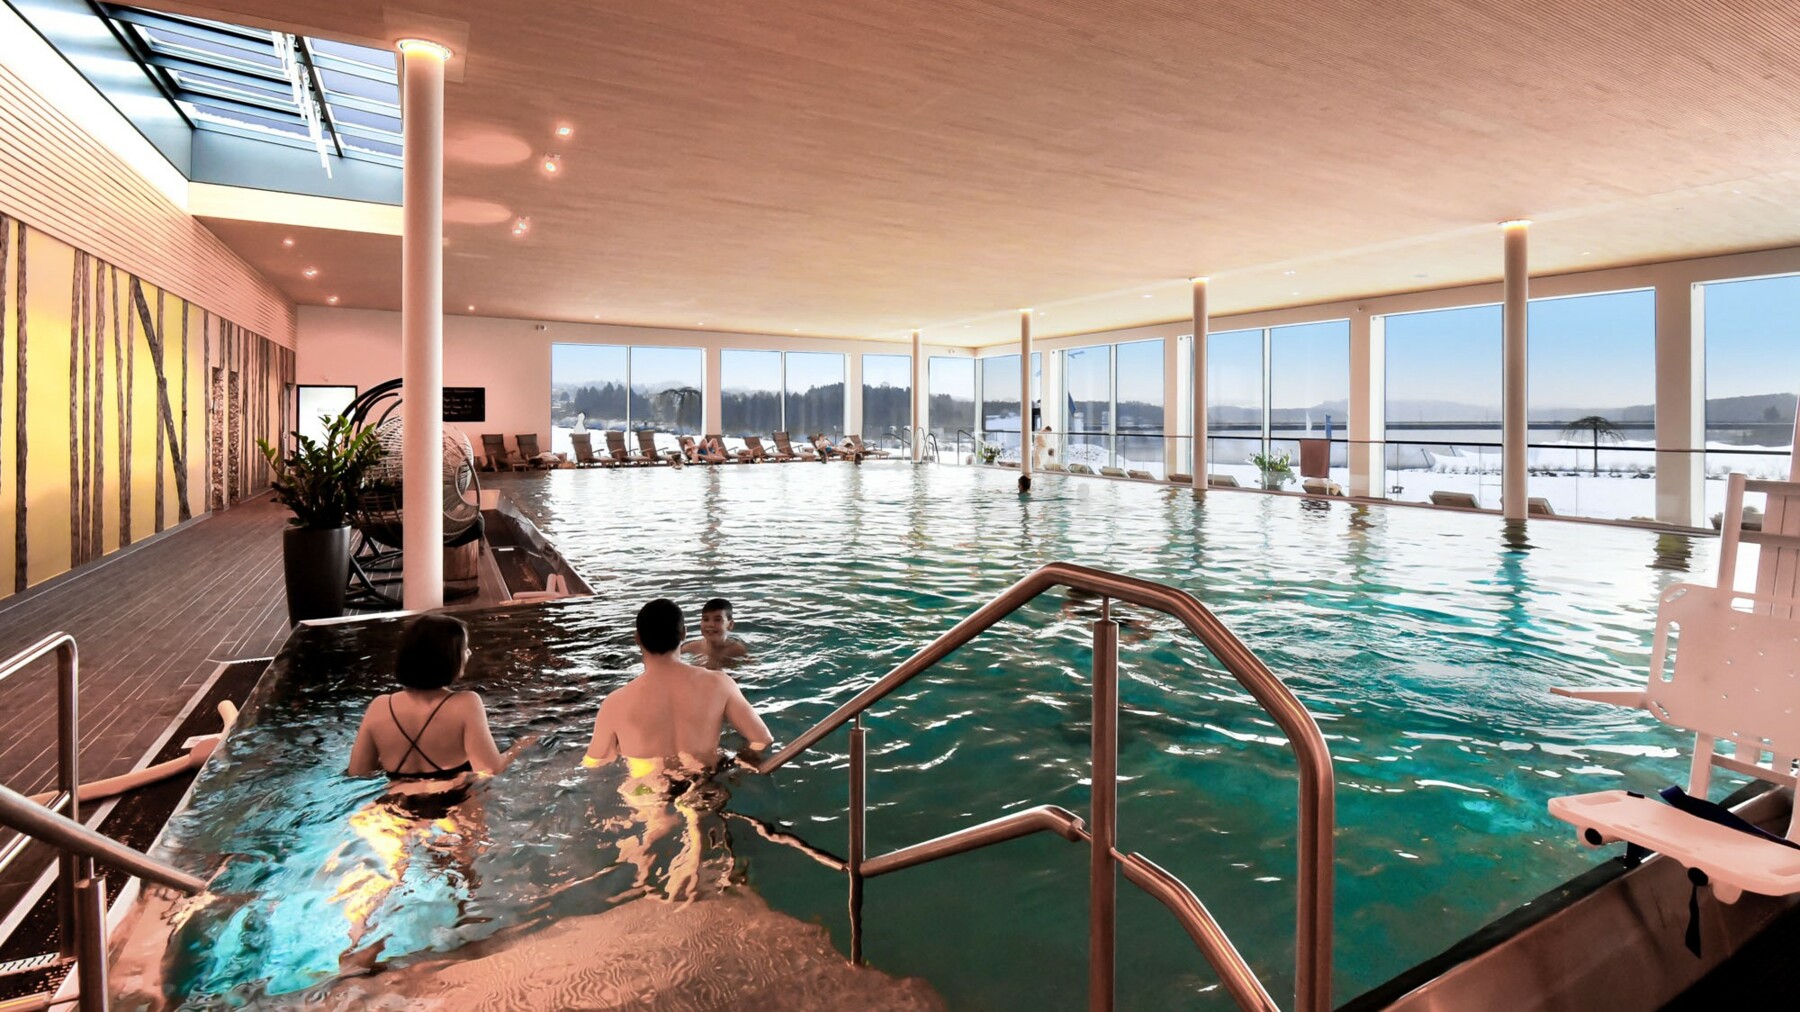 Das neue Hallenbad, in zentraler Lage am Fluss Lippe gelegen, ersetzt die beiden älteren Hallenbäder in Lünen. Es bietet zwei 25-m-Sportbecken mit Sprungbereich, ein Lehrschwimmbecken mit Hubboden sowie ein Warmwasserbecken. 